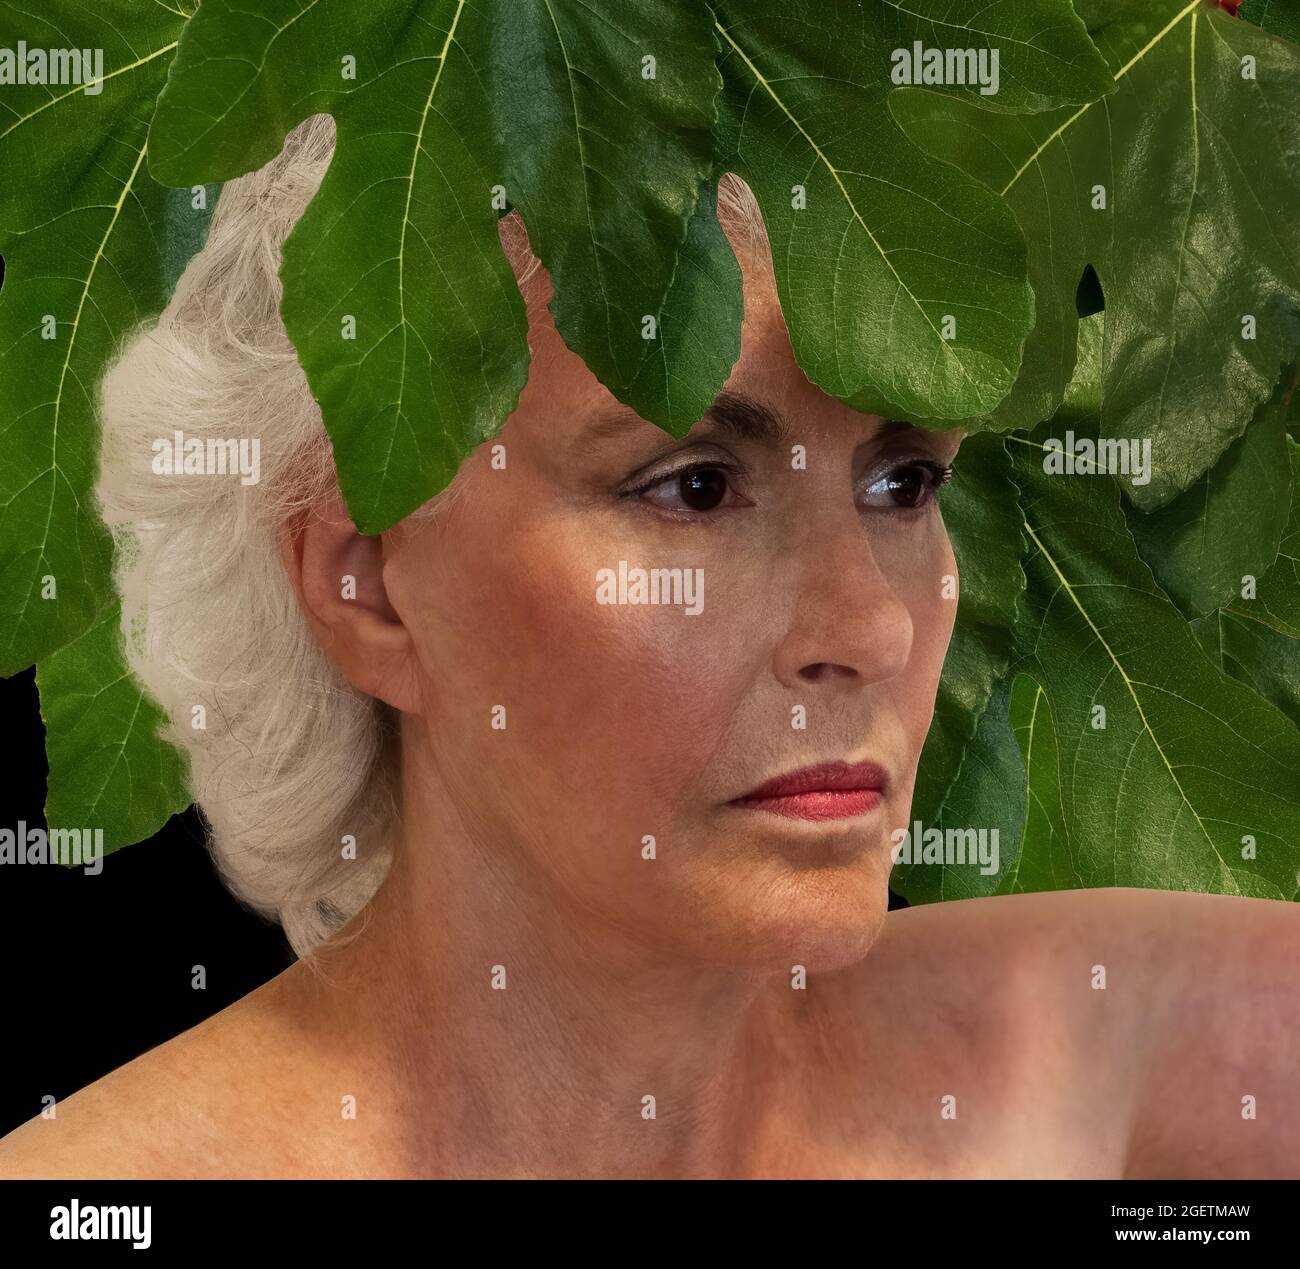 Udstyr overraskende Multiplikation Fig leaf woman hi-res stock photography and images - Alamy